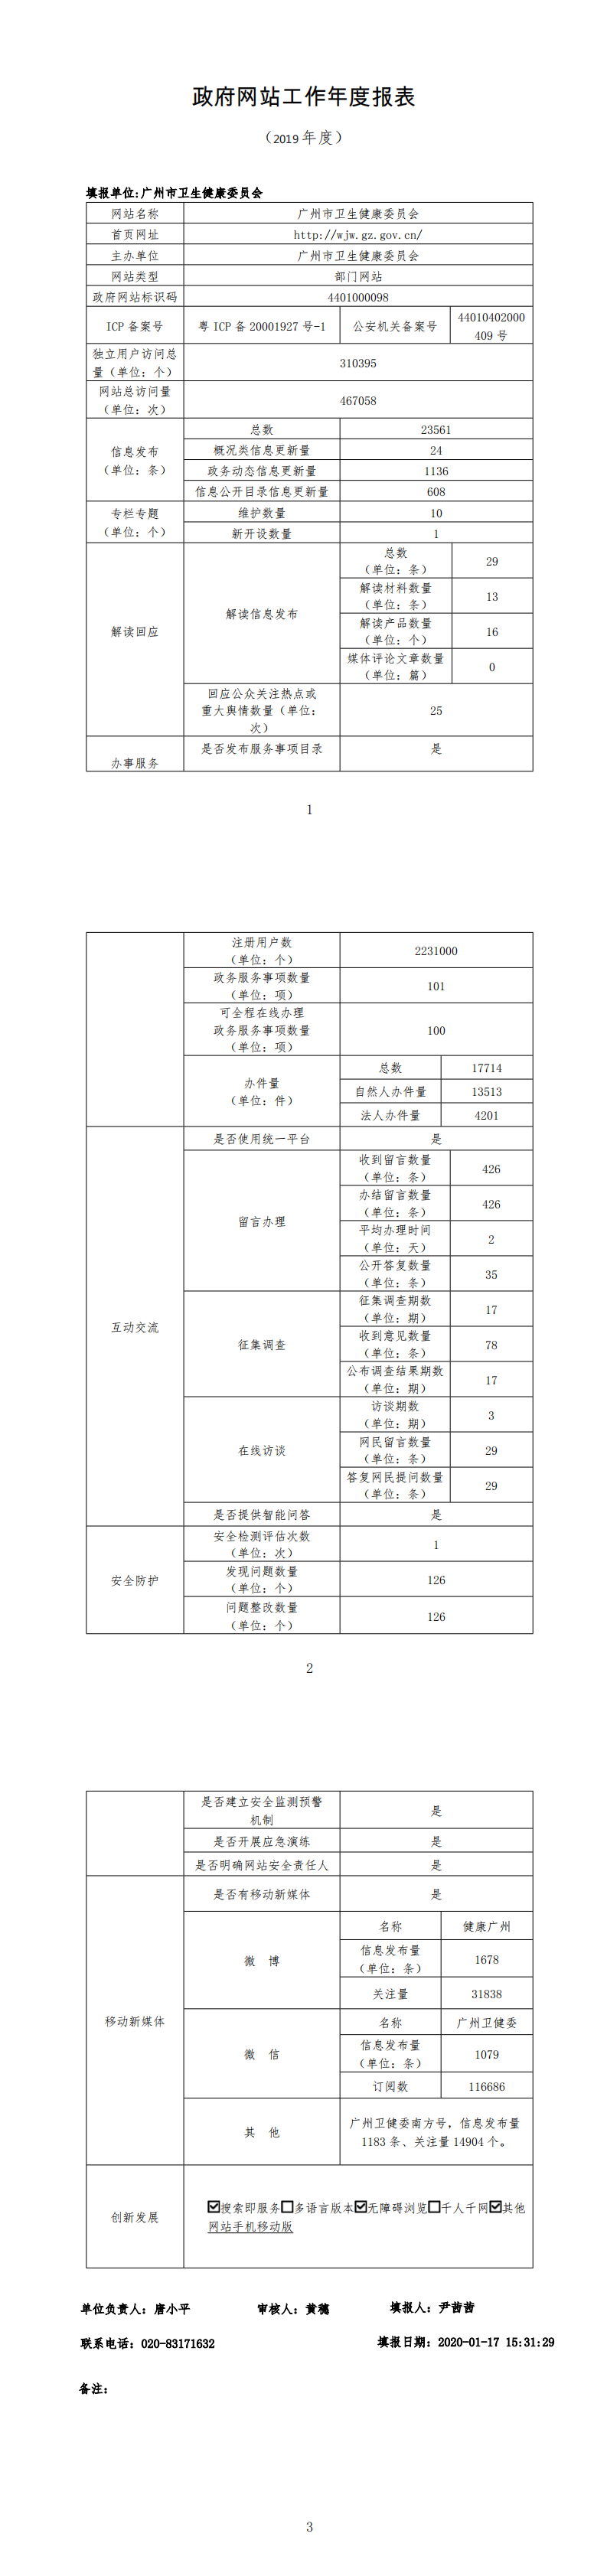 广州市卫生健康委员会2019年政府网站工作年度报表_0_wps图片.png